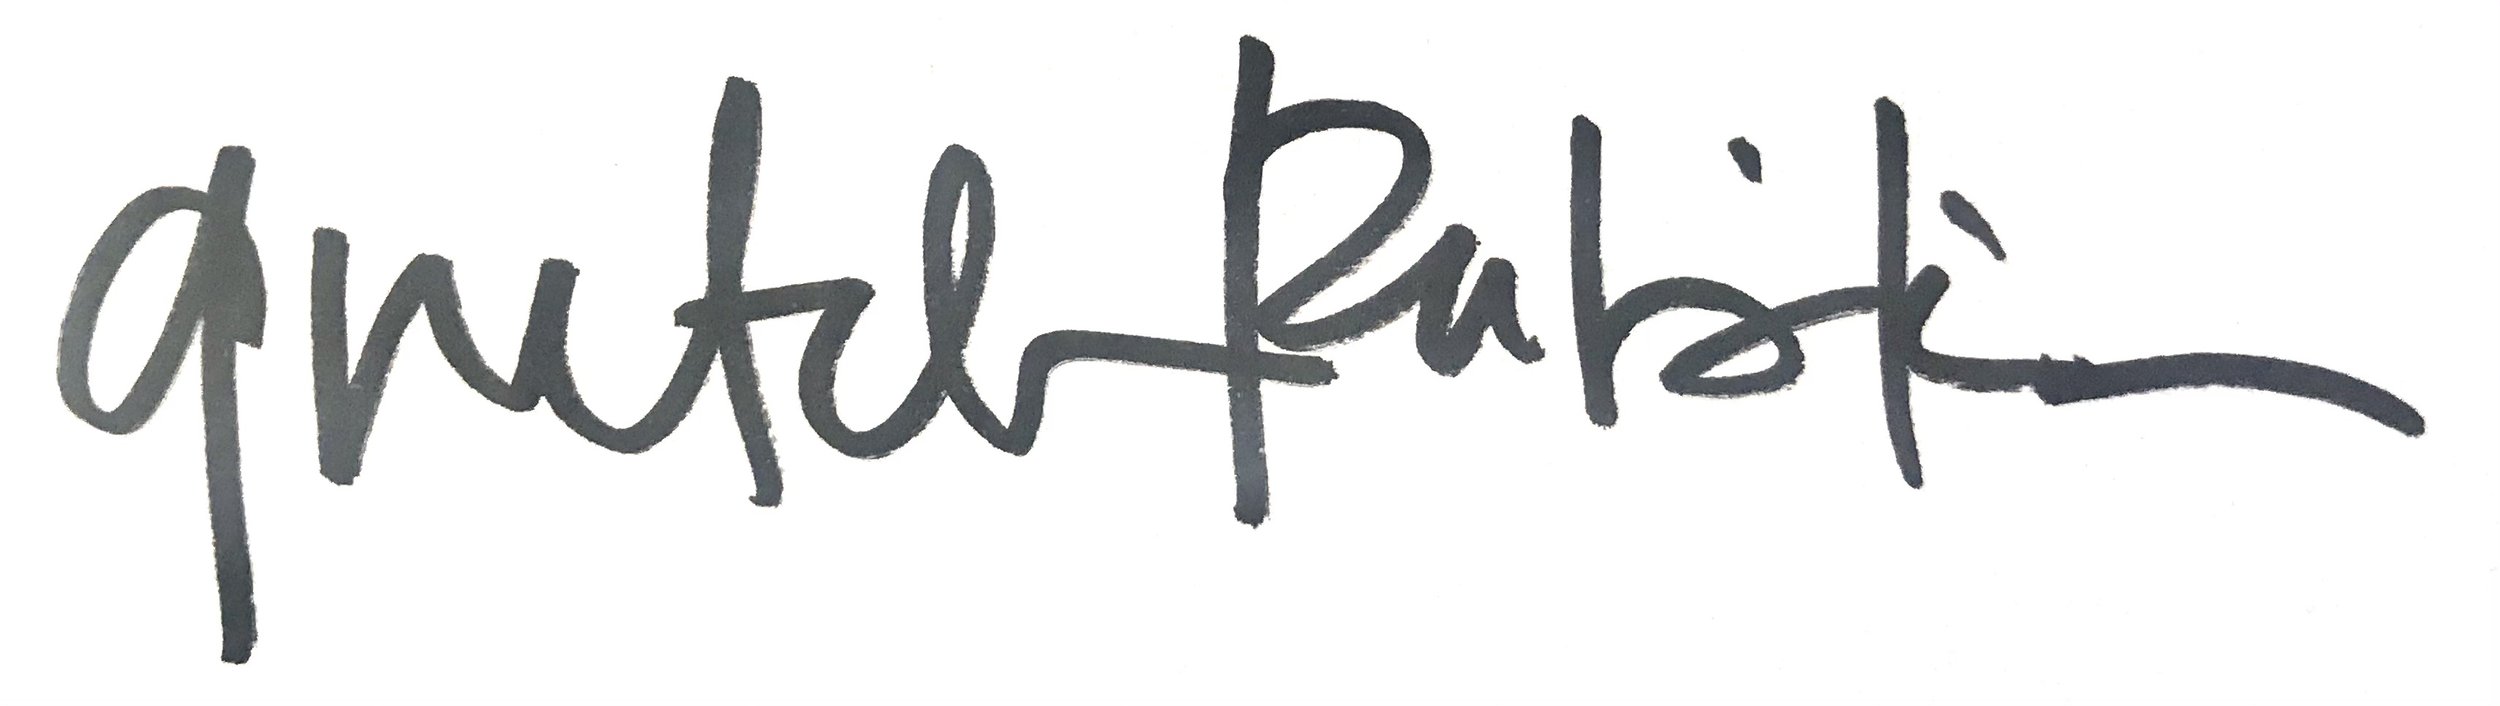 g rabinkin signature.jpg